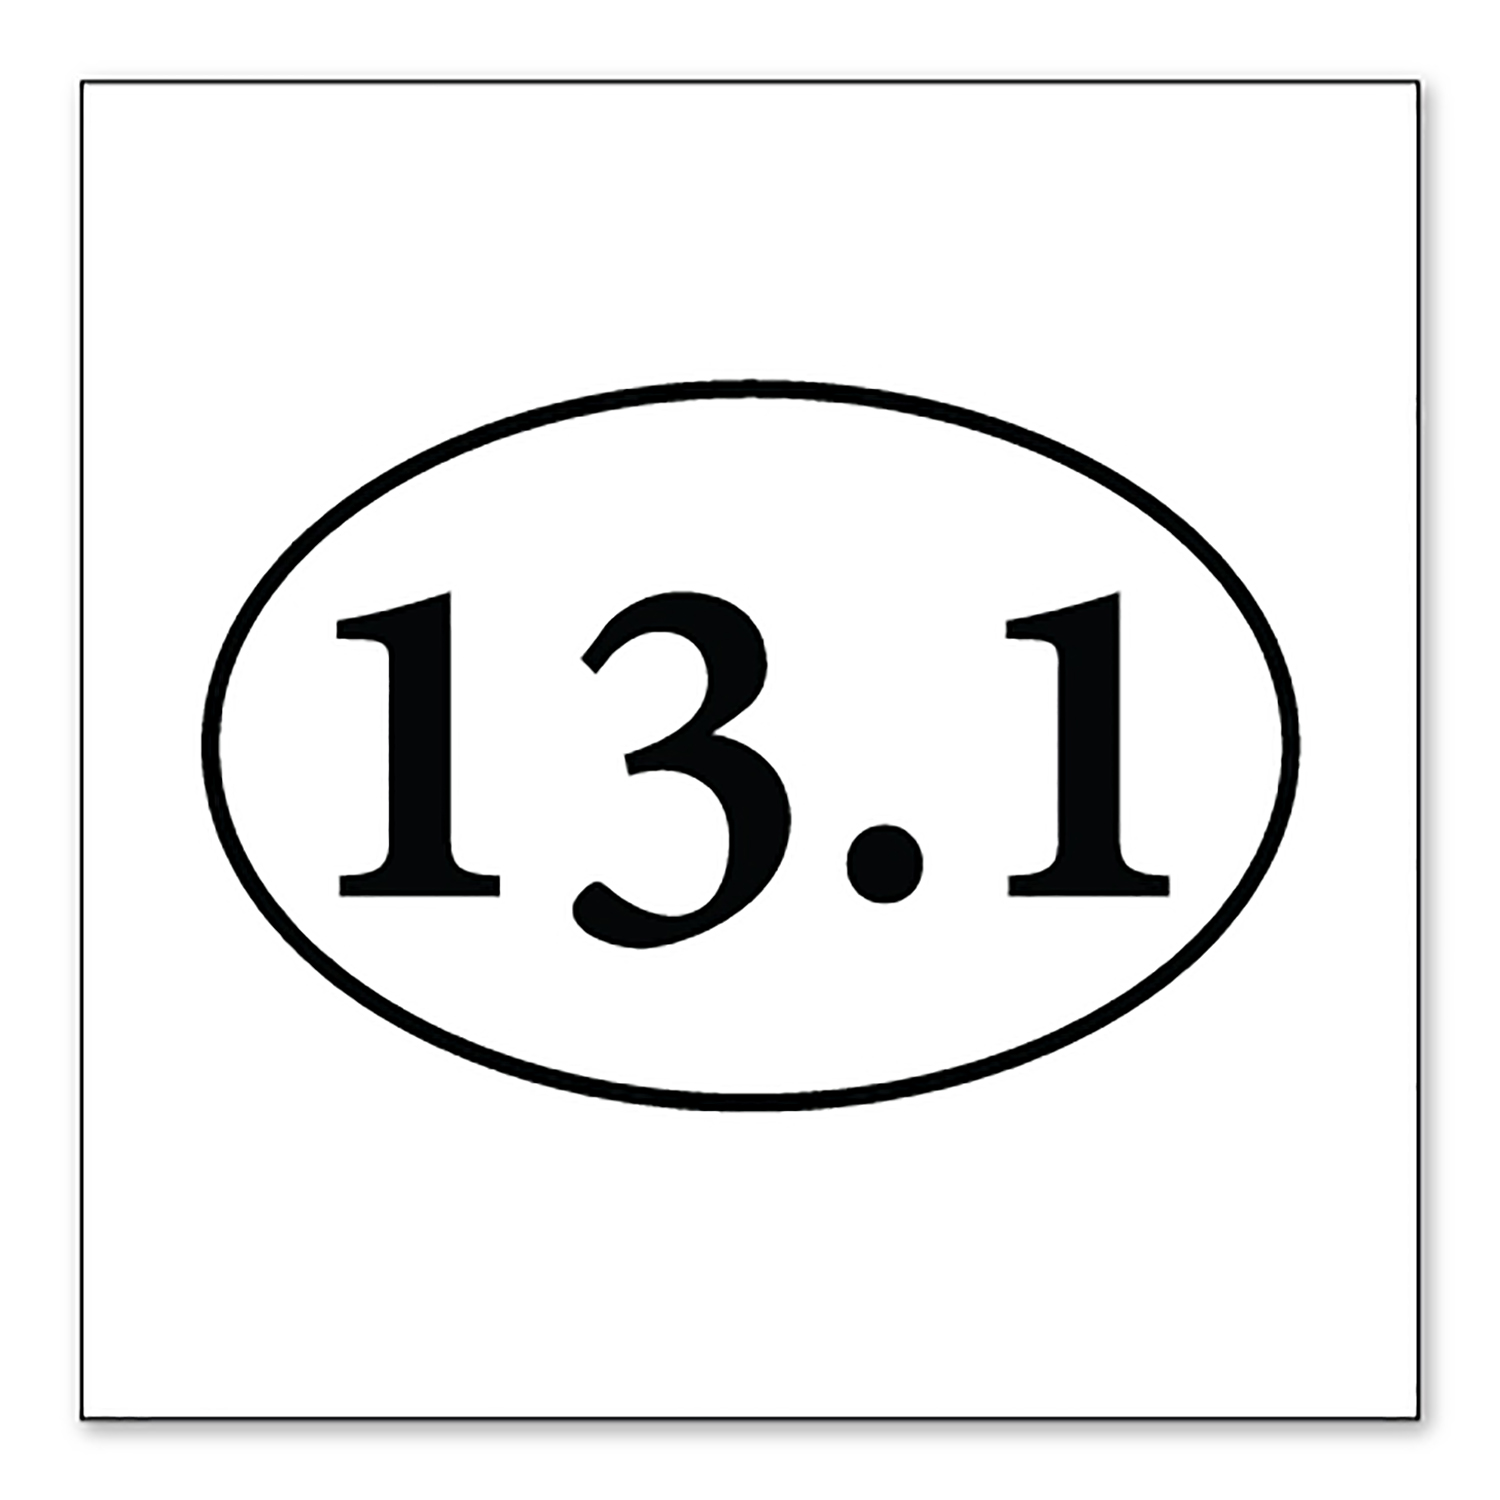 DistinctInk Custom Bumper Sticker - 3" x 3" Decorative Decal - White Background - 13.1 - Half Marathon Sticker - Running - image 1 of 2